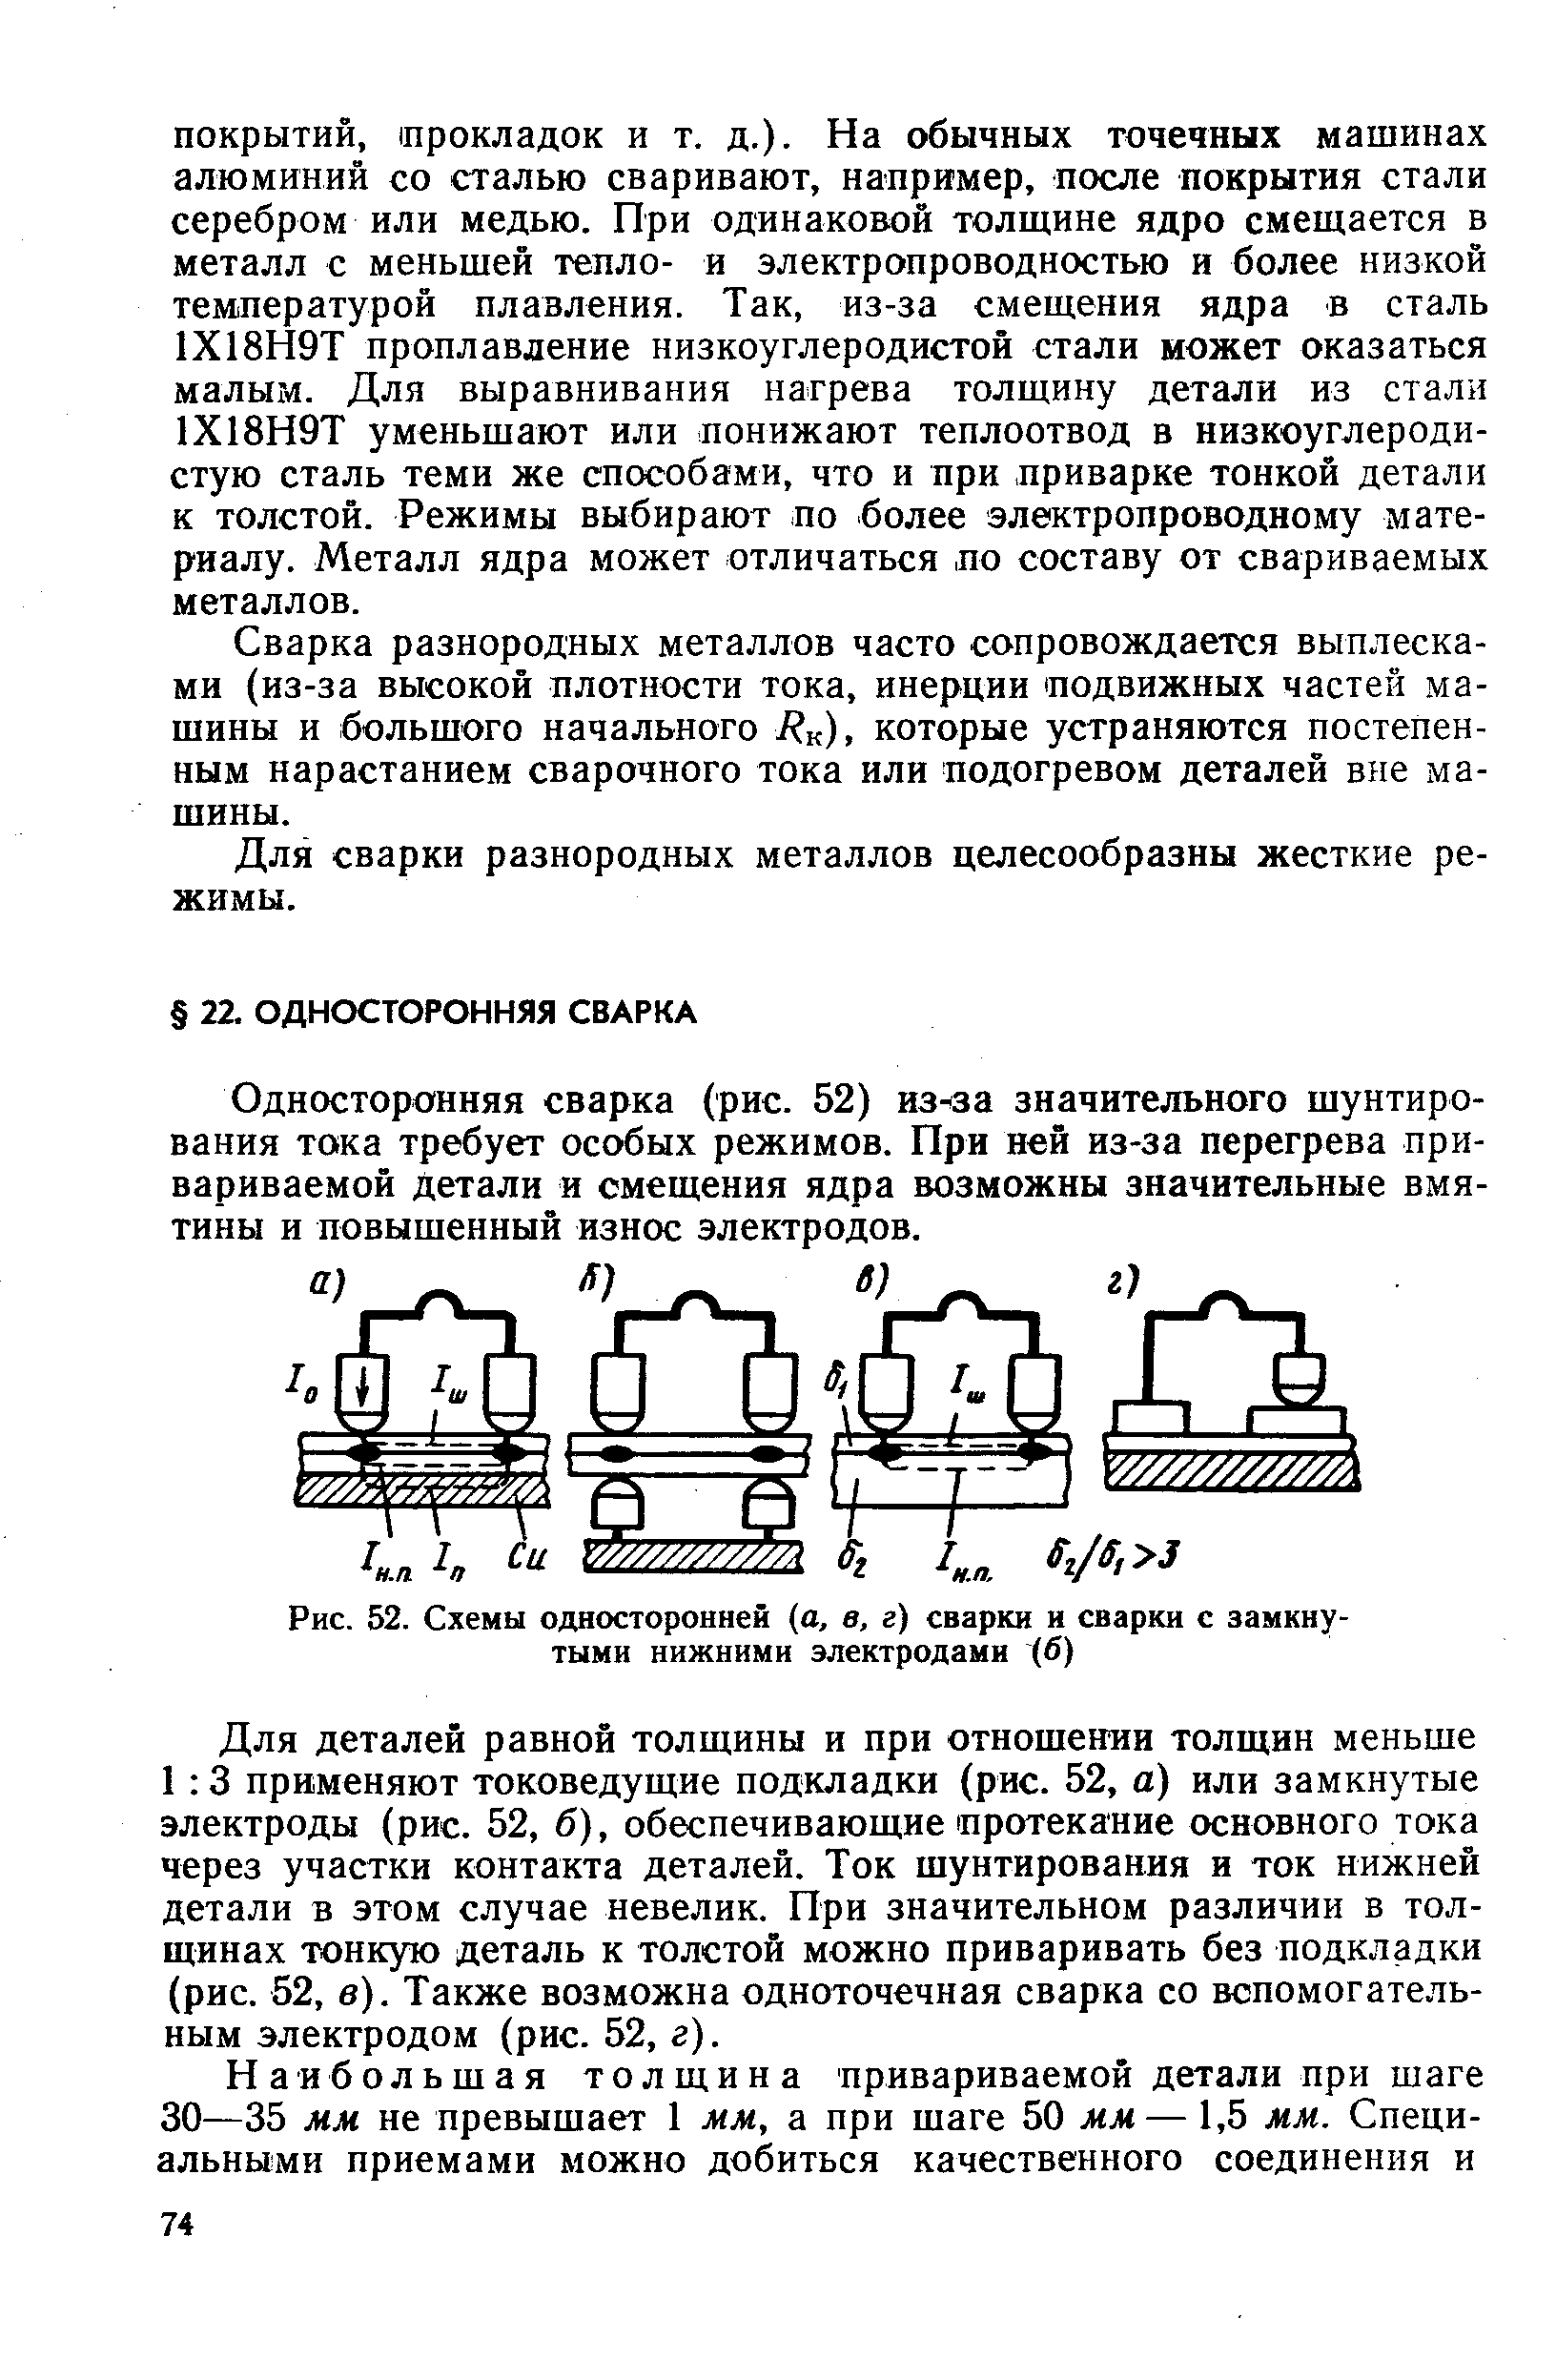 Рис. 52. Схемы односторонней (а, в, г) сварки и сварки с замкнутыми нижними электродами (б)
